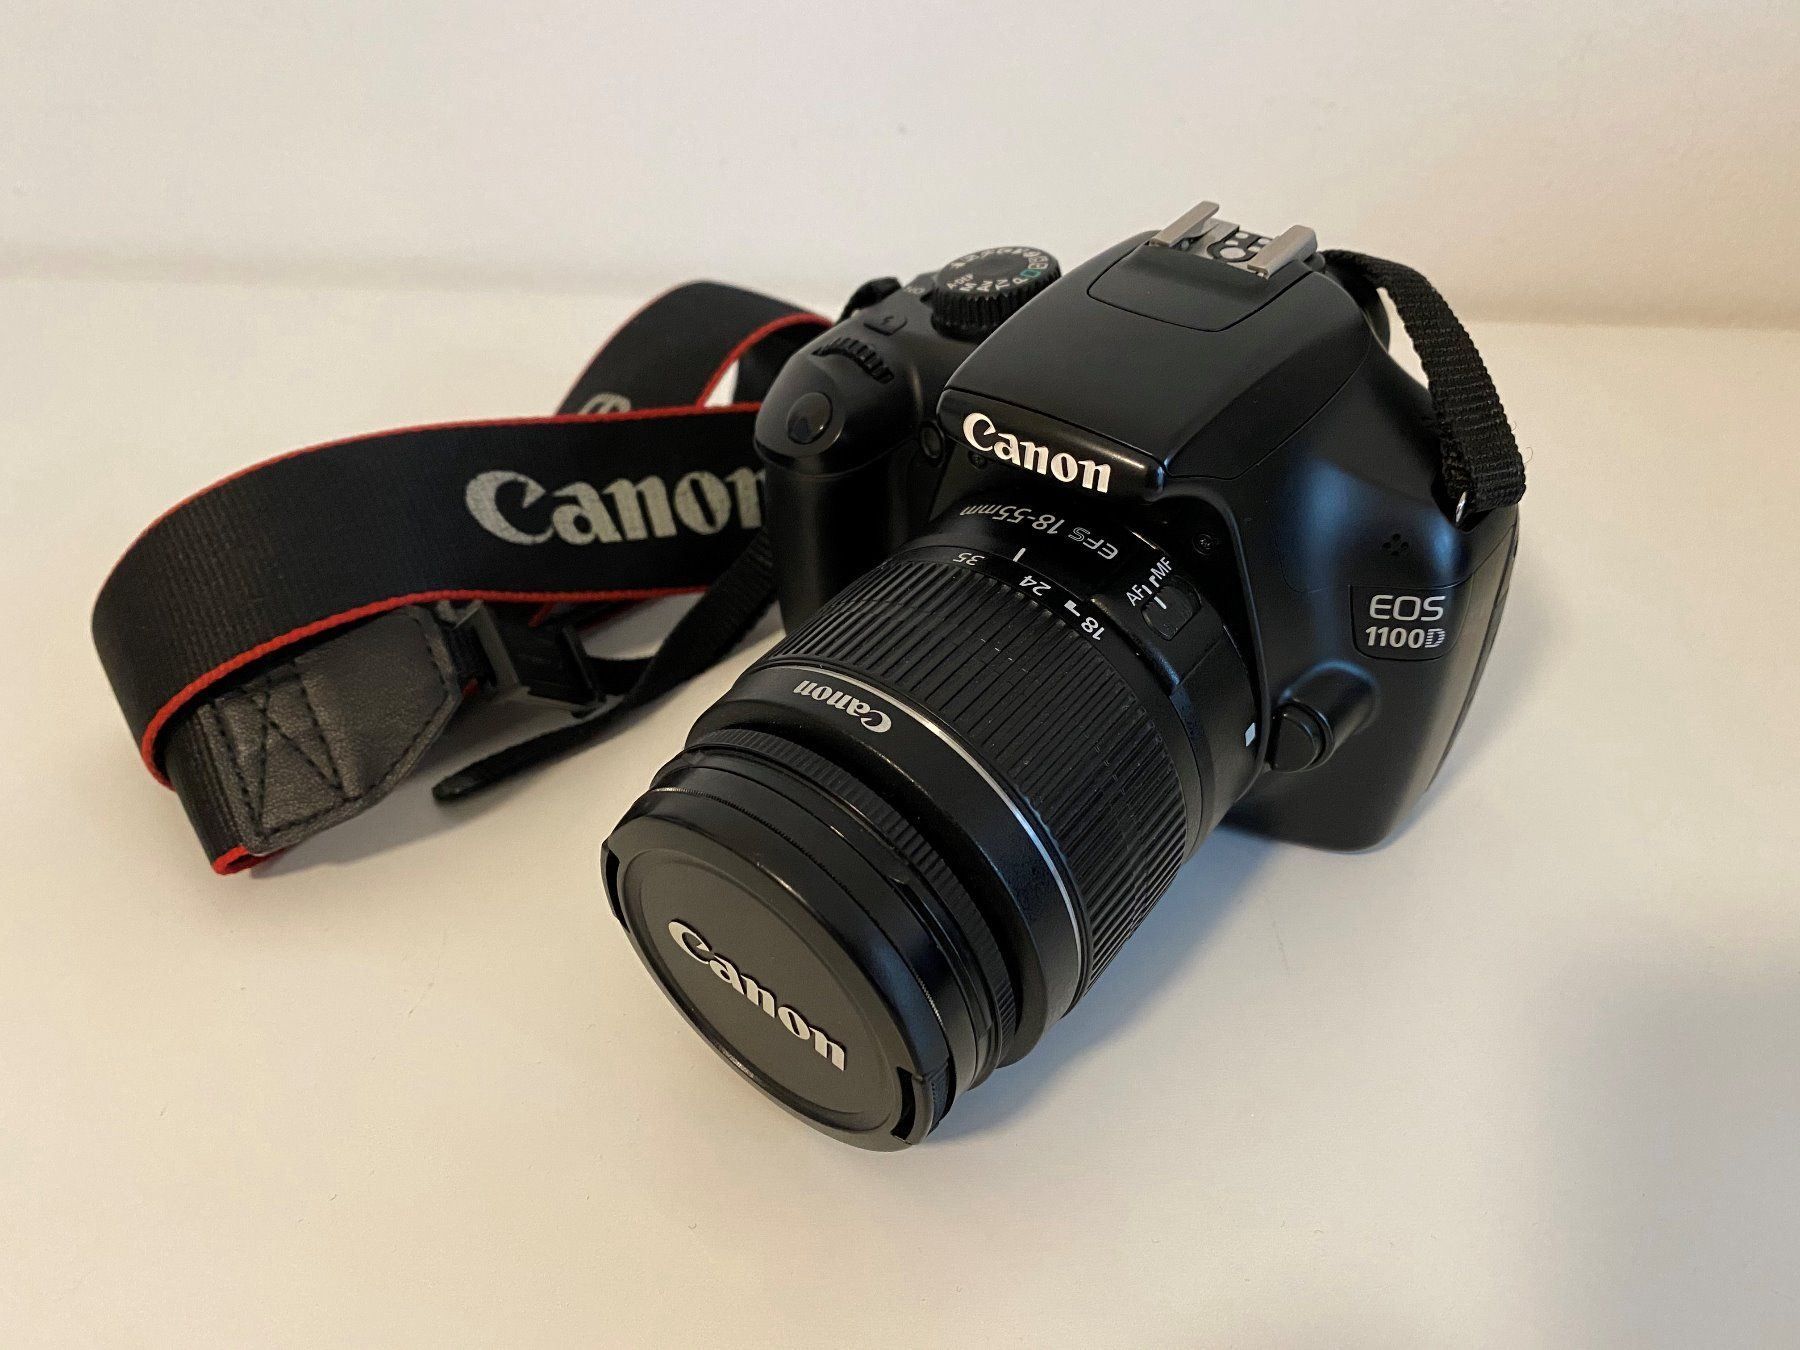 Spiegelreflexkamera Canon  EOS  1100D  kaufen auf Ricardo